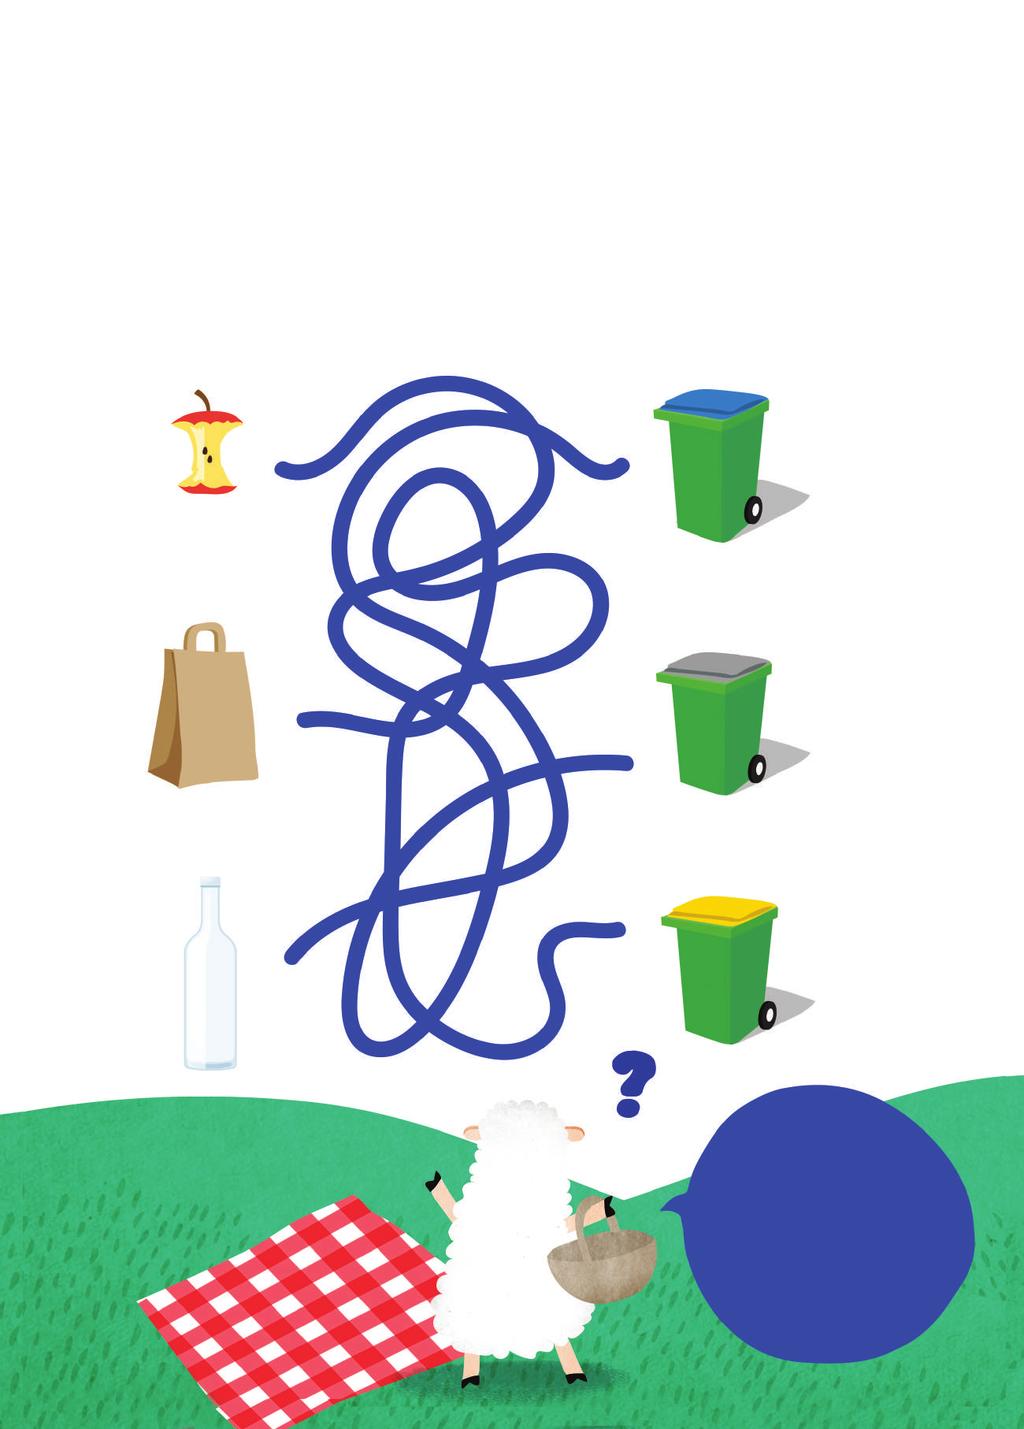 A Ofélia terminou seu picnic e agora ela precisa reciclar o seu lixo. Você pode ajudá-la a reciclar corretamente conectando cada lixo na lixeira correta?